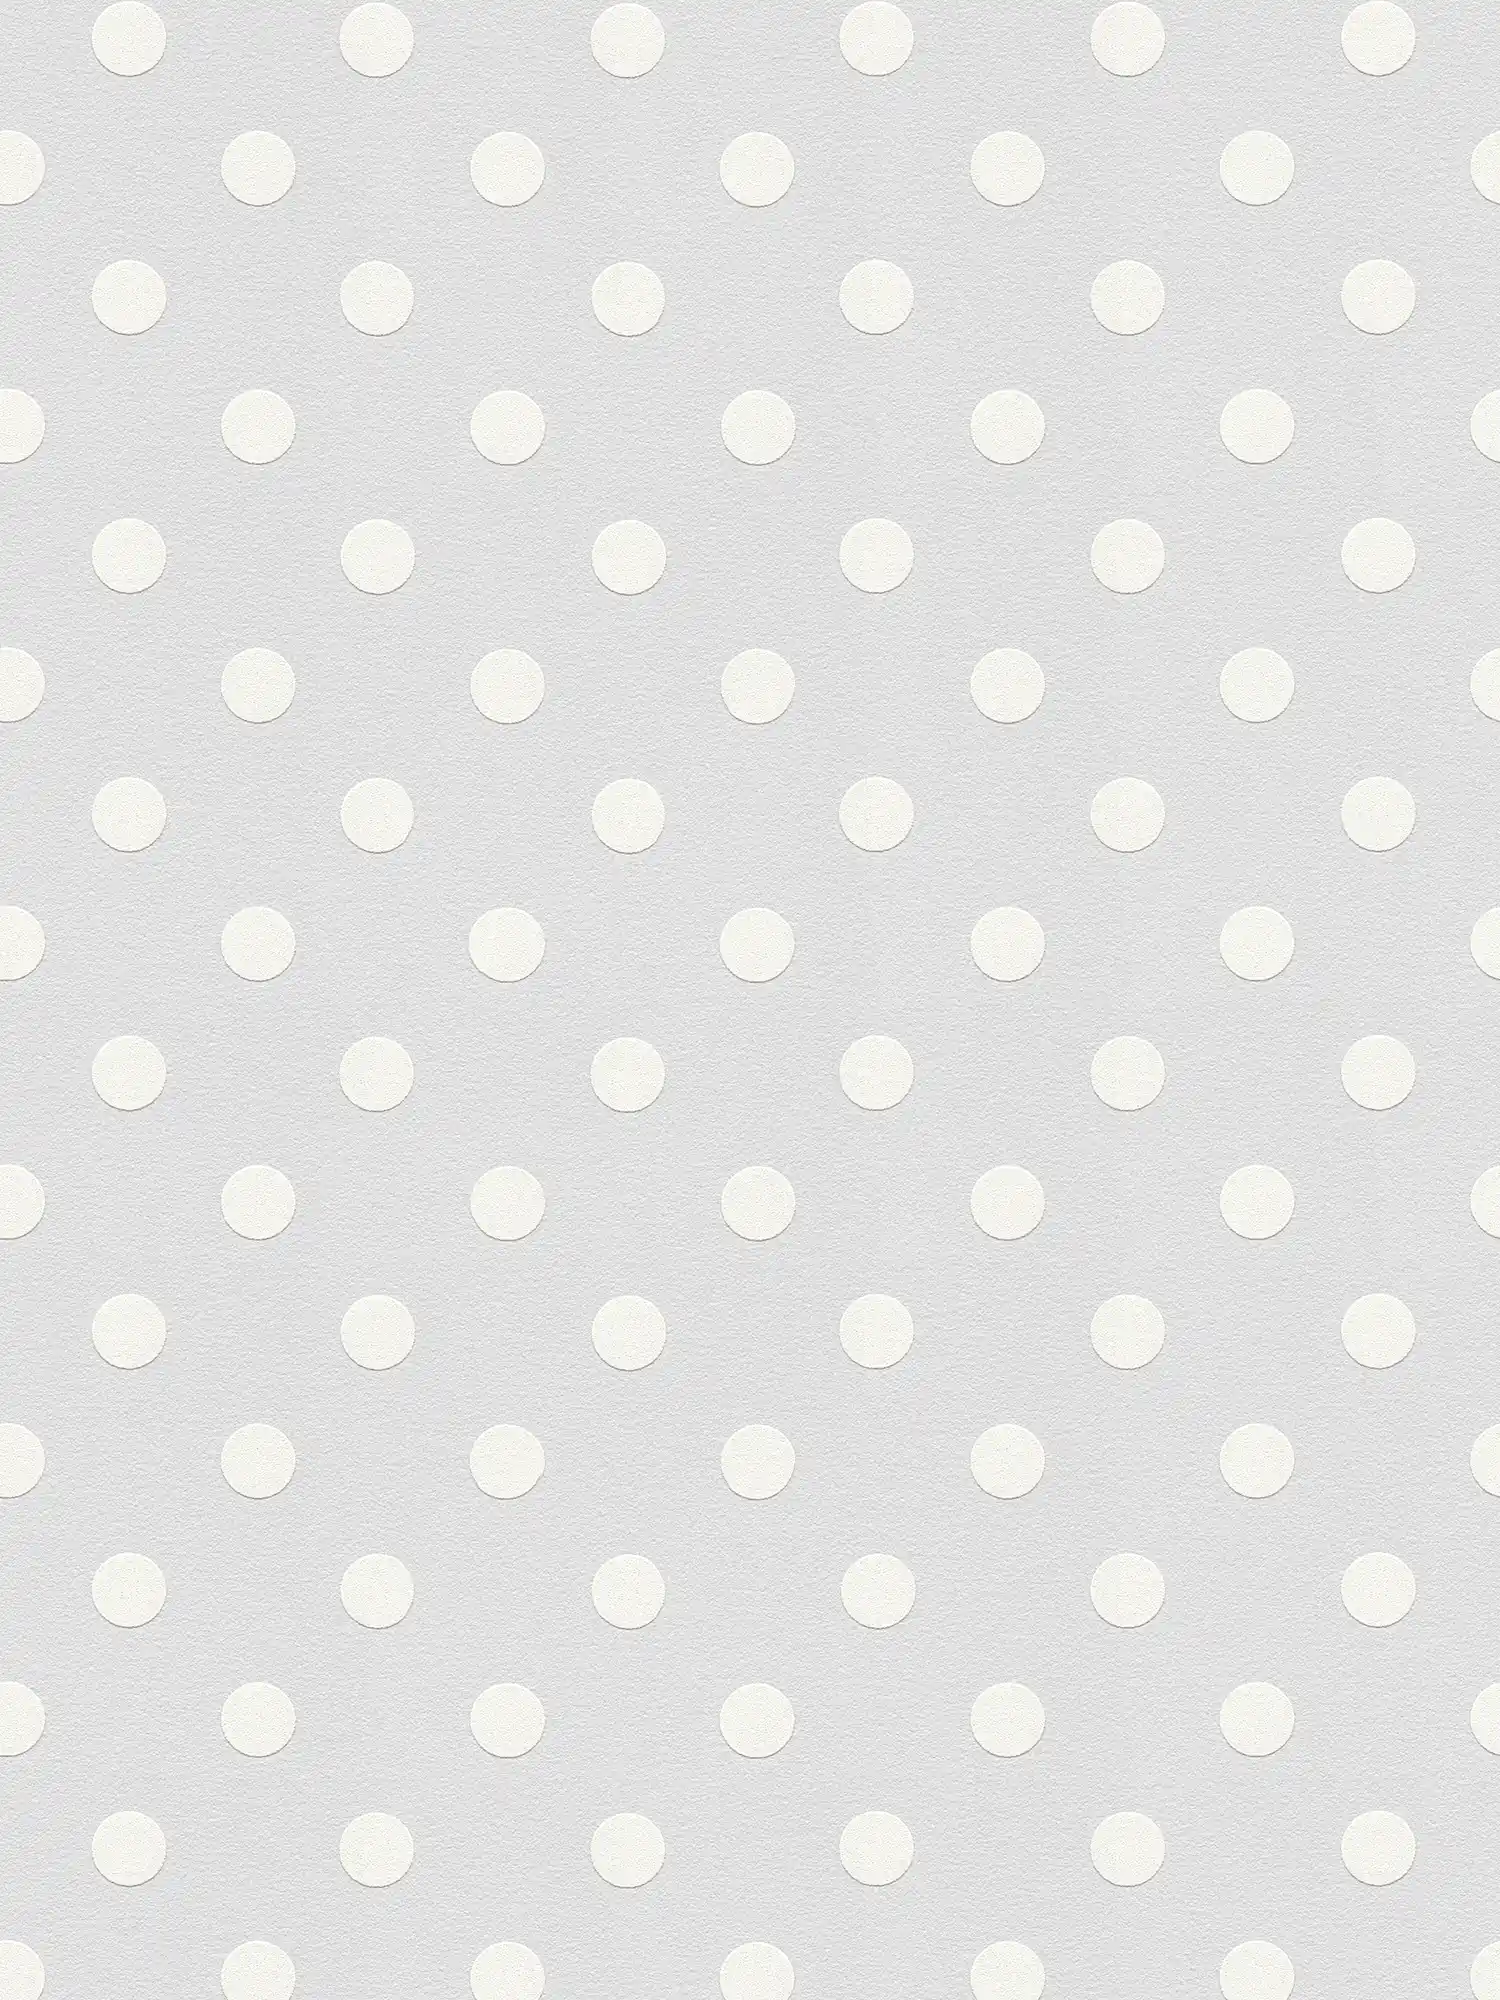 Polka dots design behang - grijs, wit
